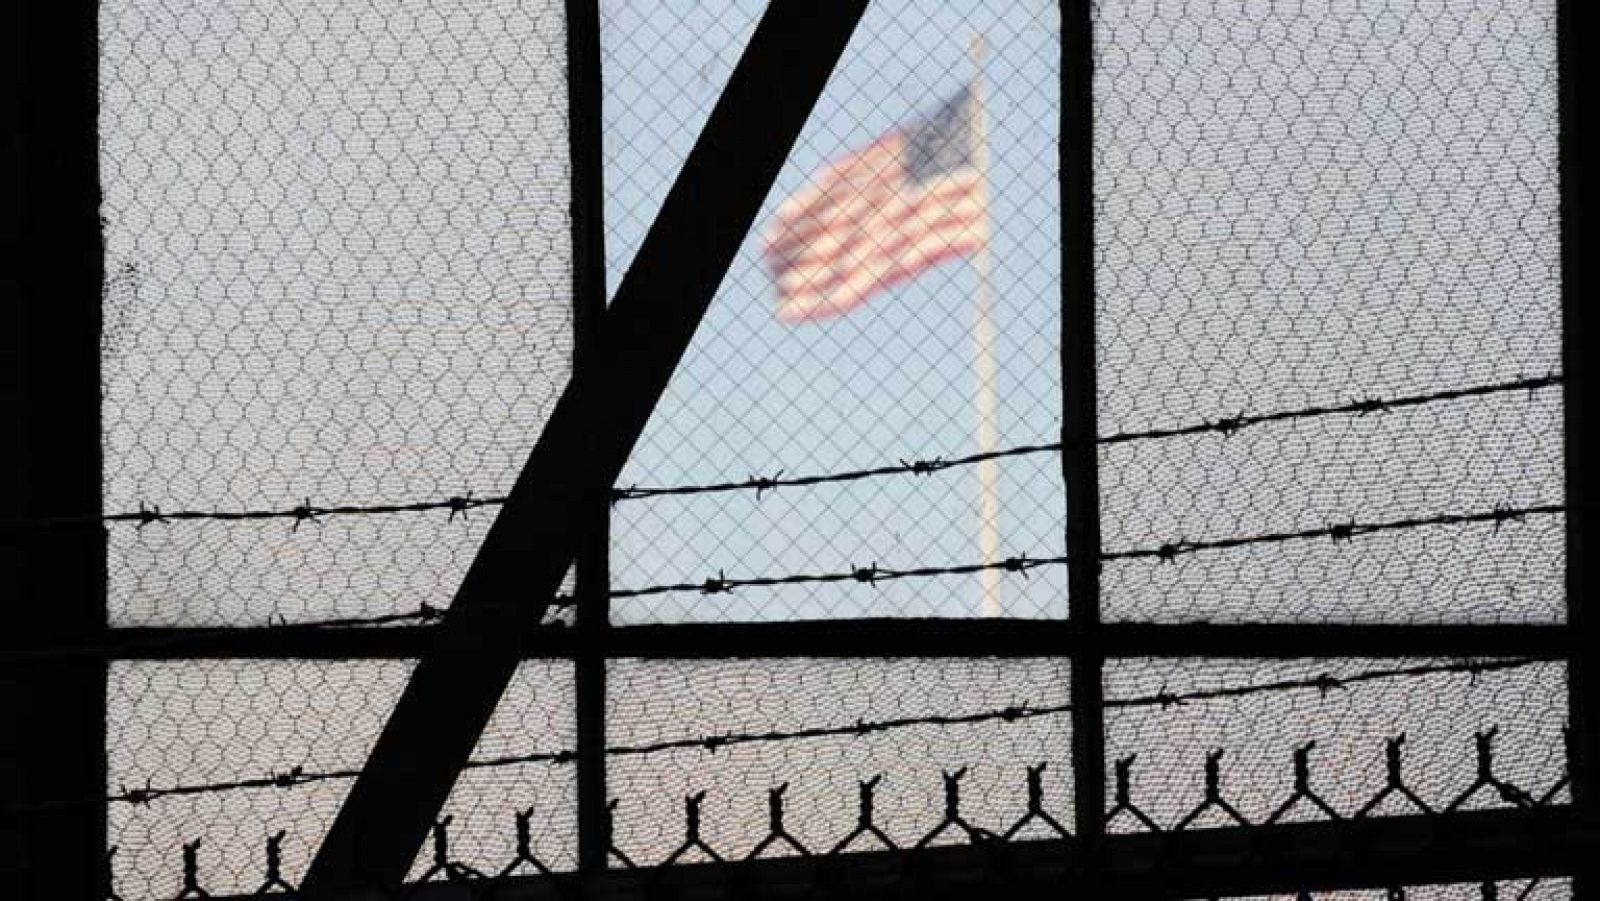 Los presos de Guantánamo protestan con una huelga de hambre